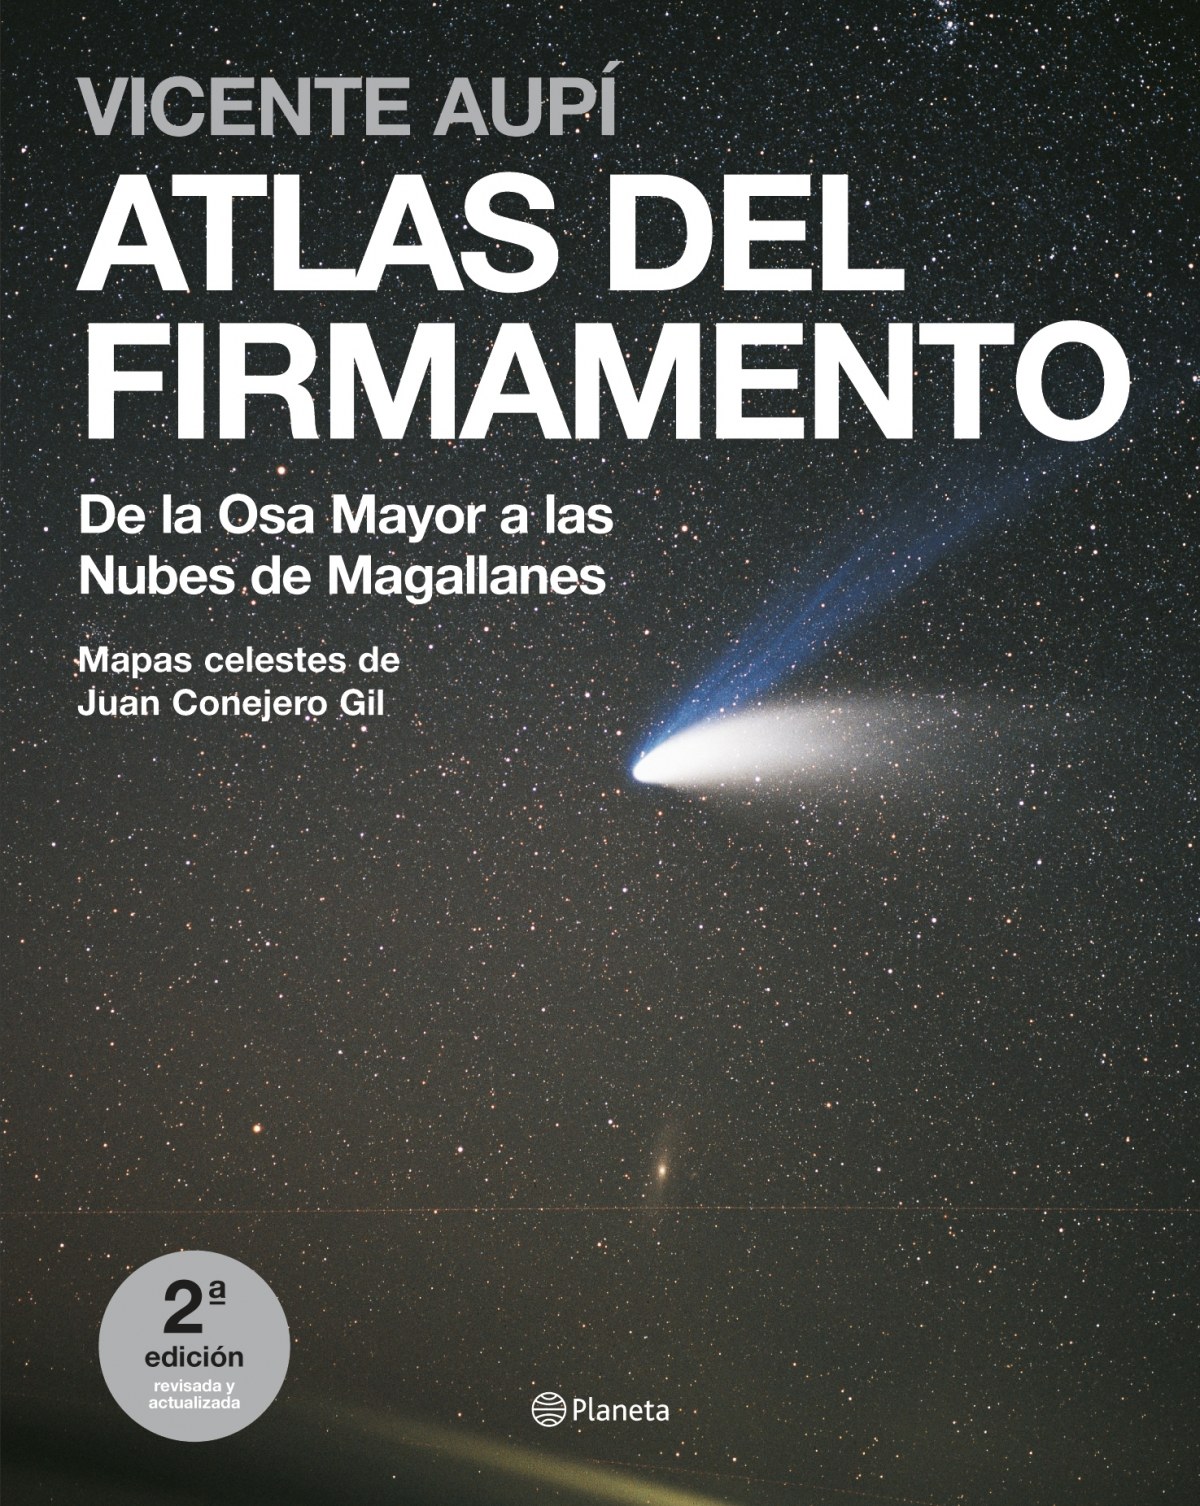 Atlas del firmamento. De la Osa Mayor a las Nubes de Magallanes - Vicente Aupí